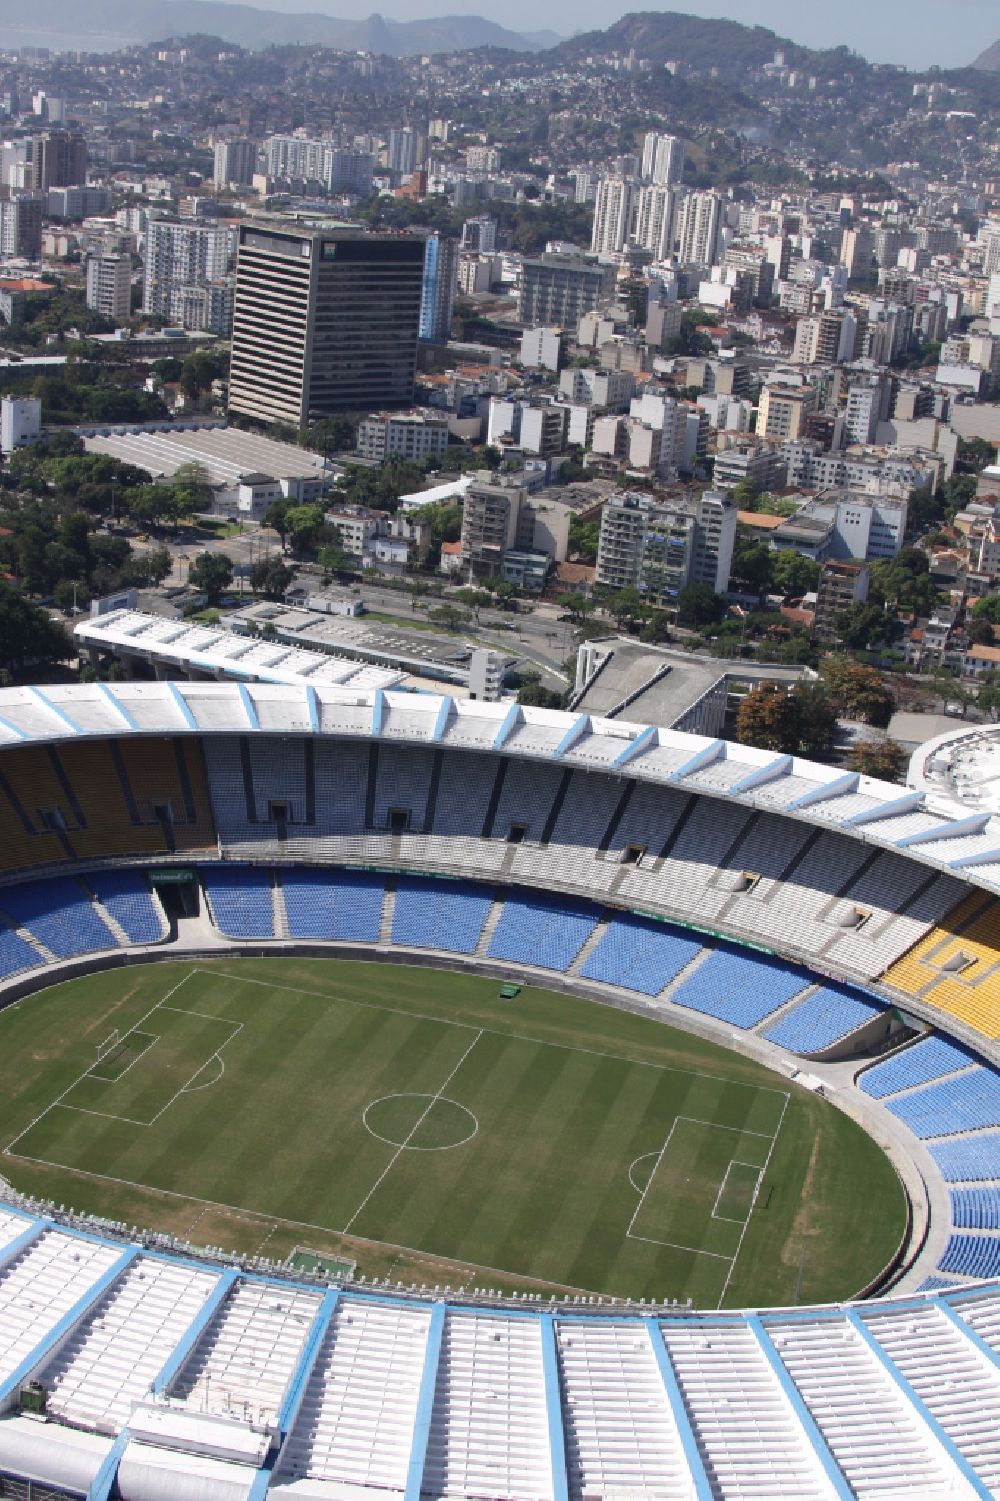 Luftbild Rio de Janeiro - Fussball- und Mehrzweckhalle Stadion Estadio do Maracana vor dem Umbau anlässlich des FIFA World Cup 2014 in Rio de Janeiro in Brasilien 